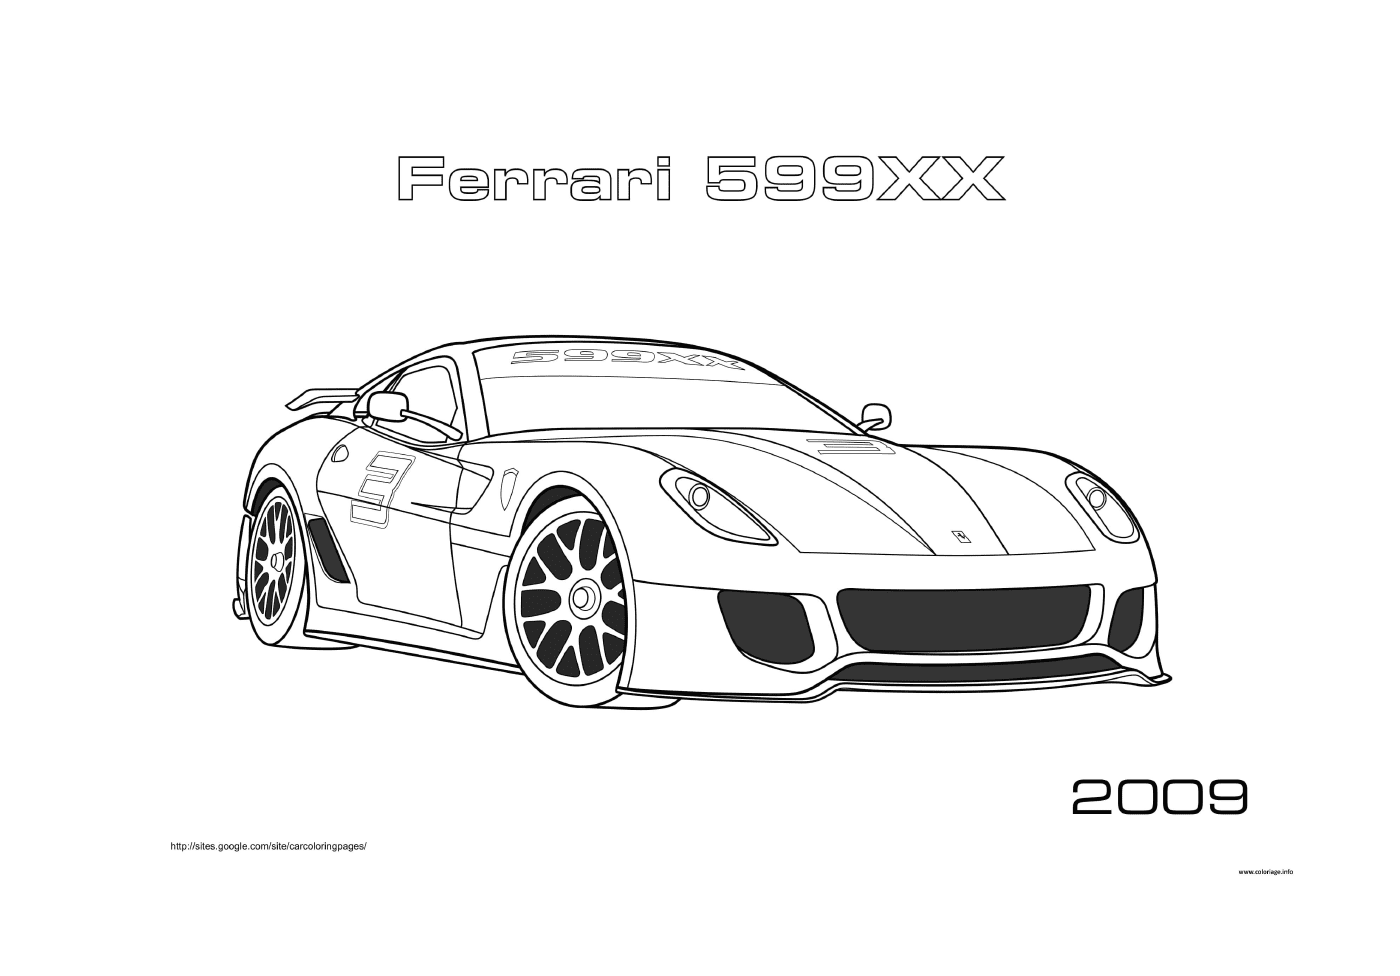  Ferrari 599XX coche de carreras 